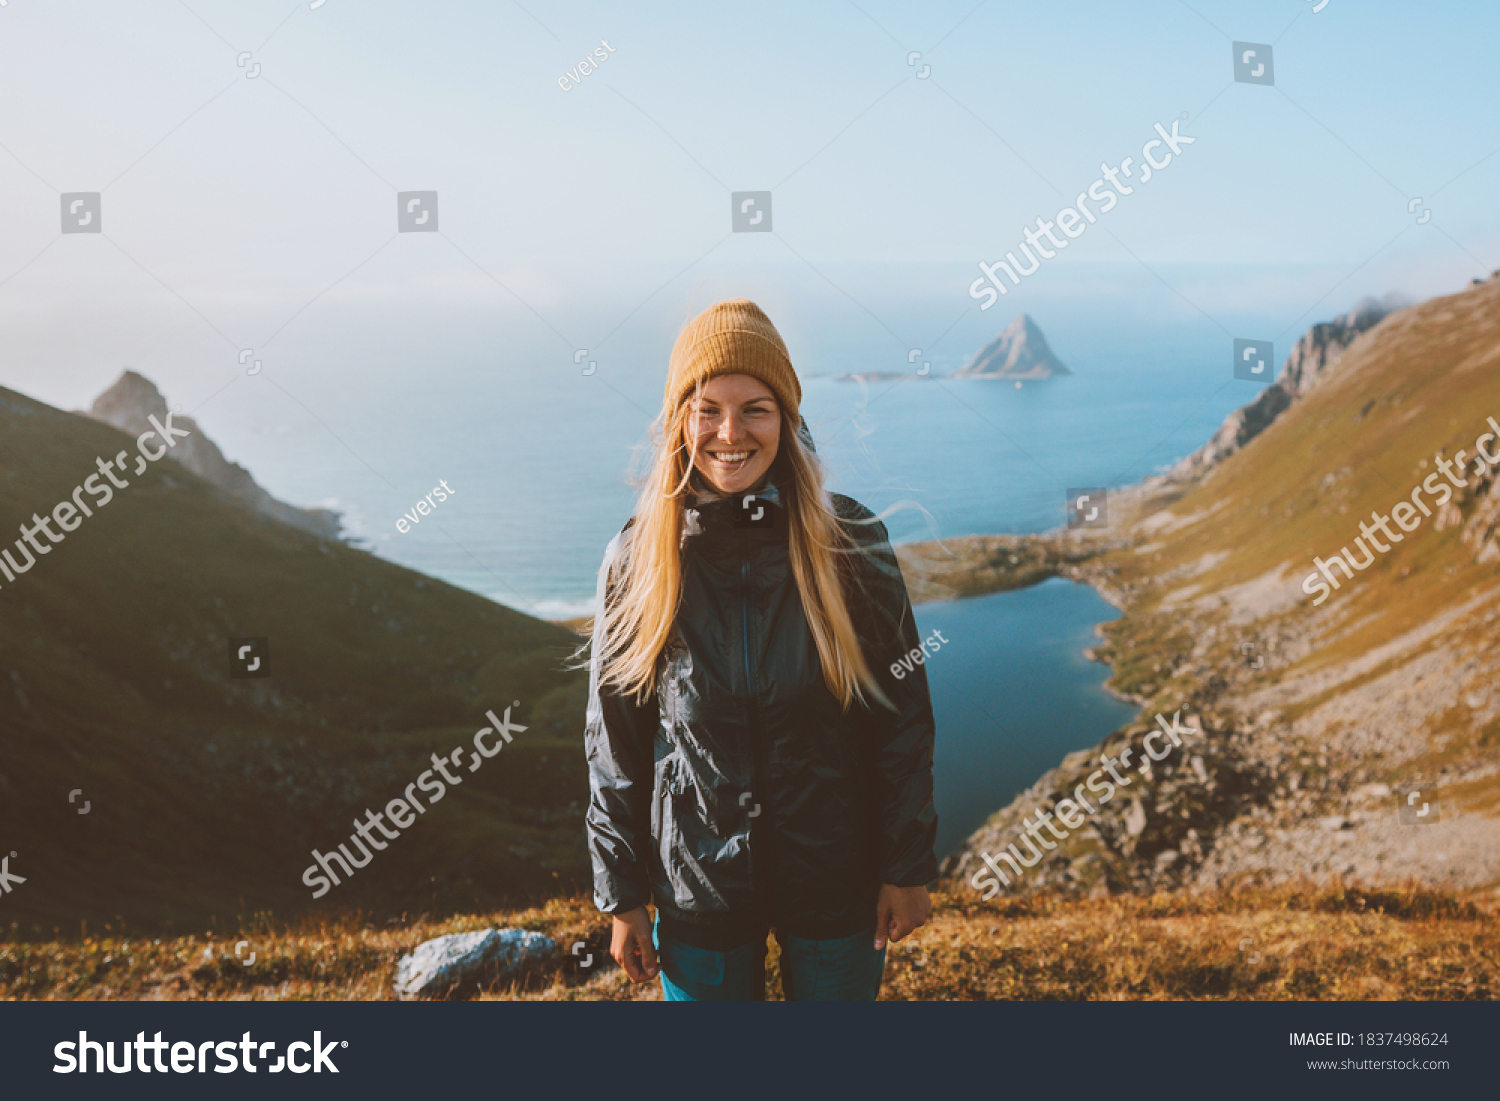 Norway Images, Stock Photos & Vectors | Shutterstock